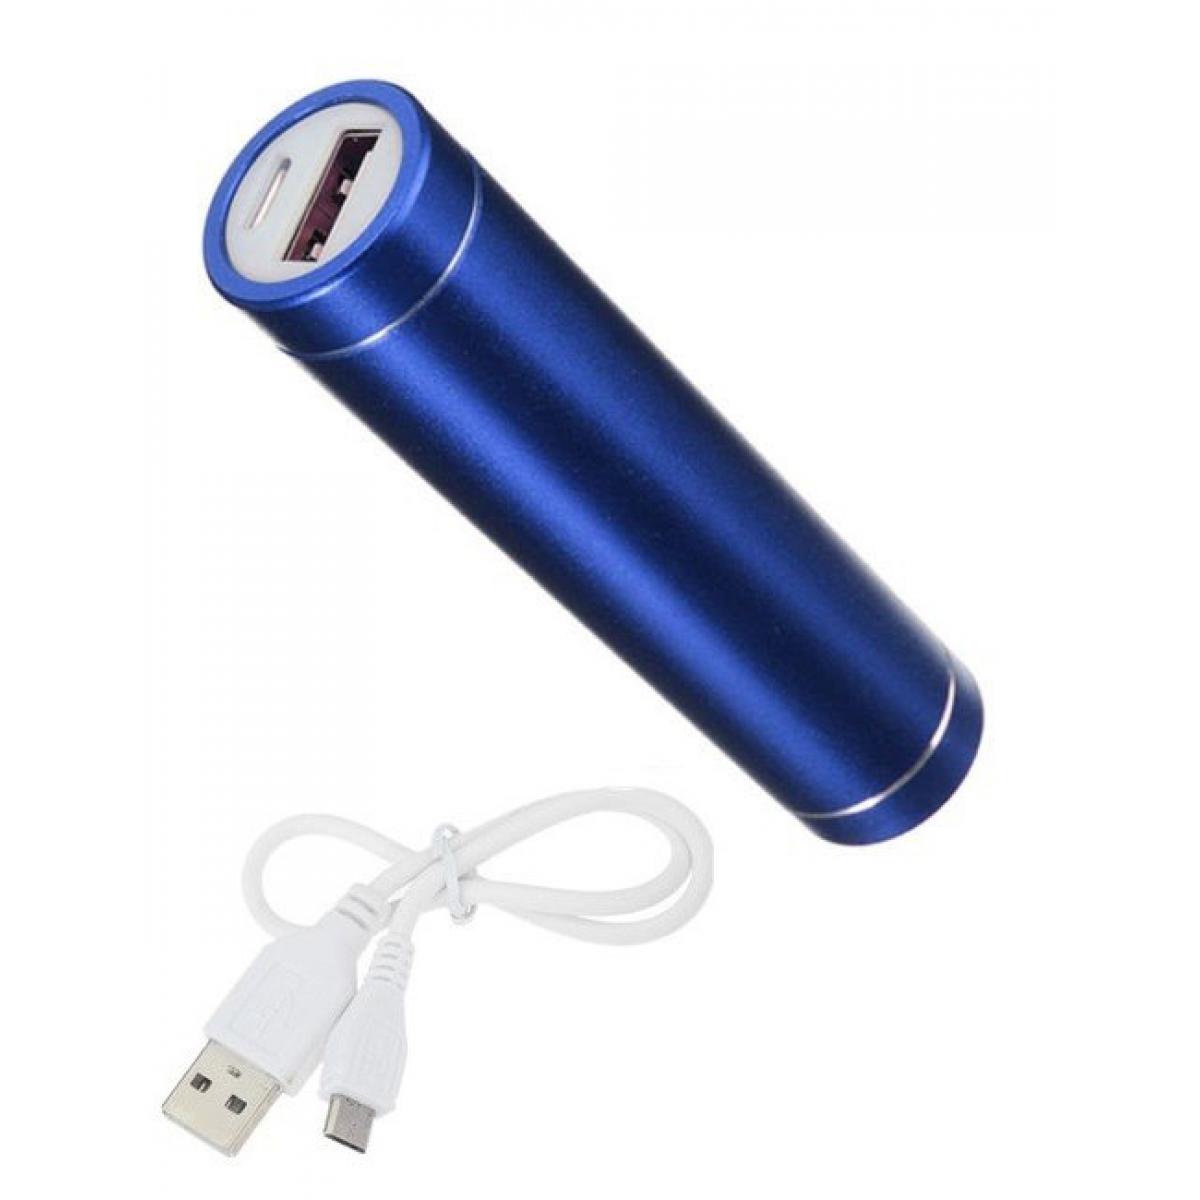 Shot - Batterie Chargeur Externe pour HUAWEI Y7 2019 Power Bank 2600mAh avec Cable USB/Mirco USB Secours Telephon (BLEU) - Chargeur secteur téléphone